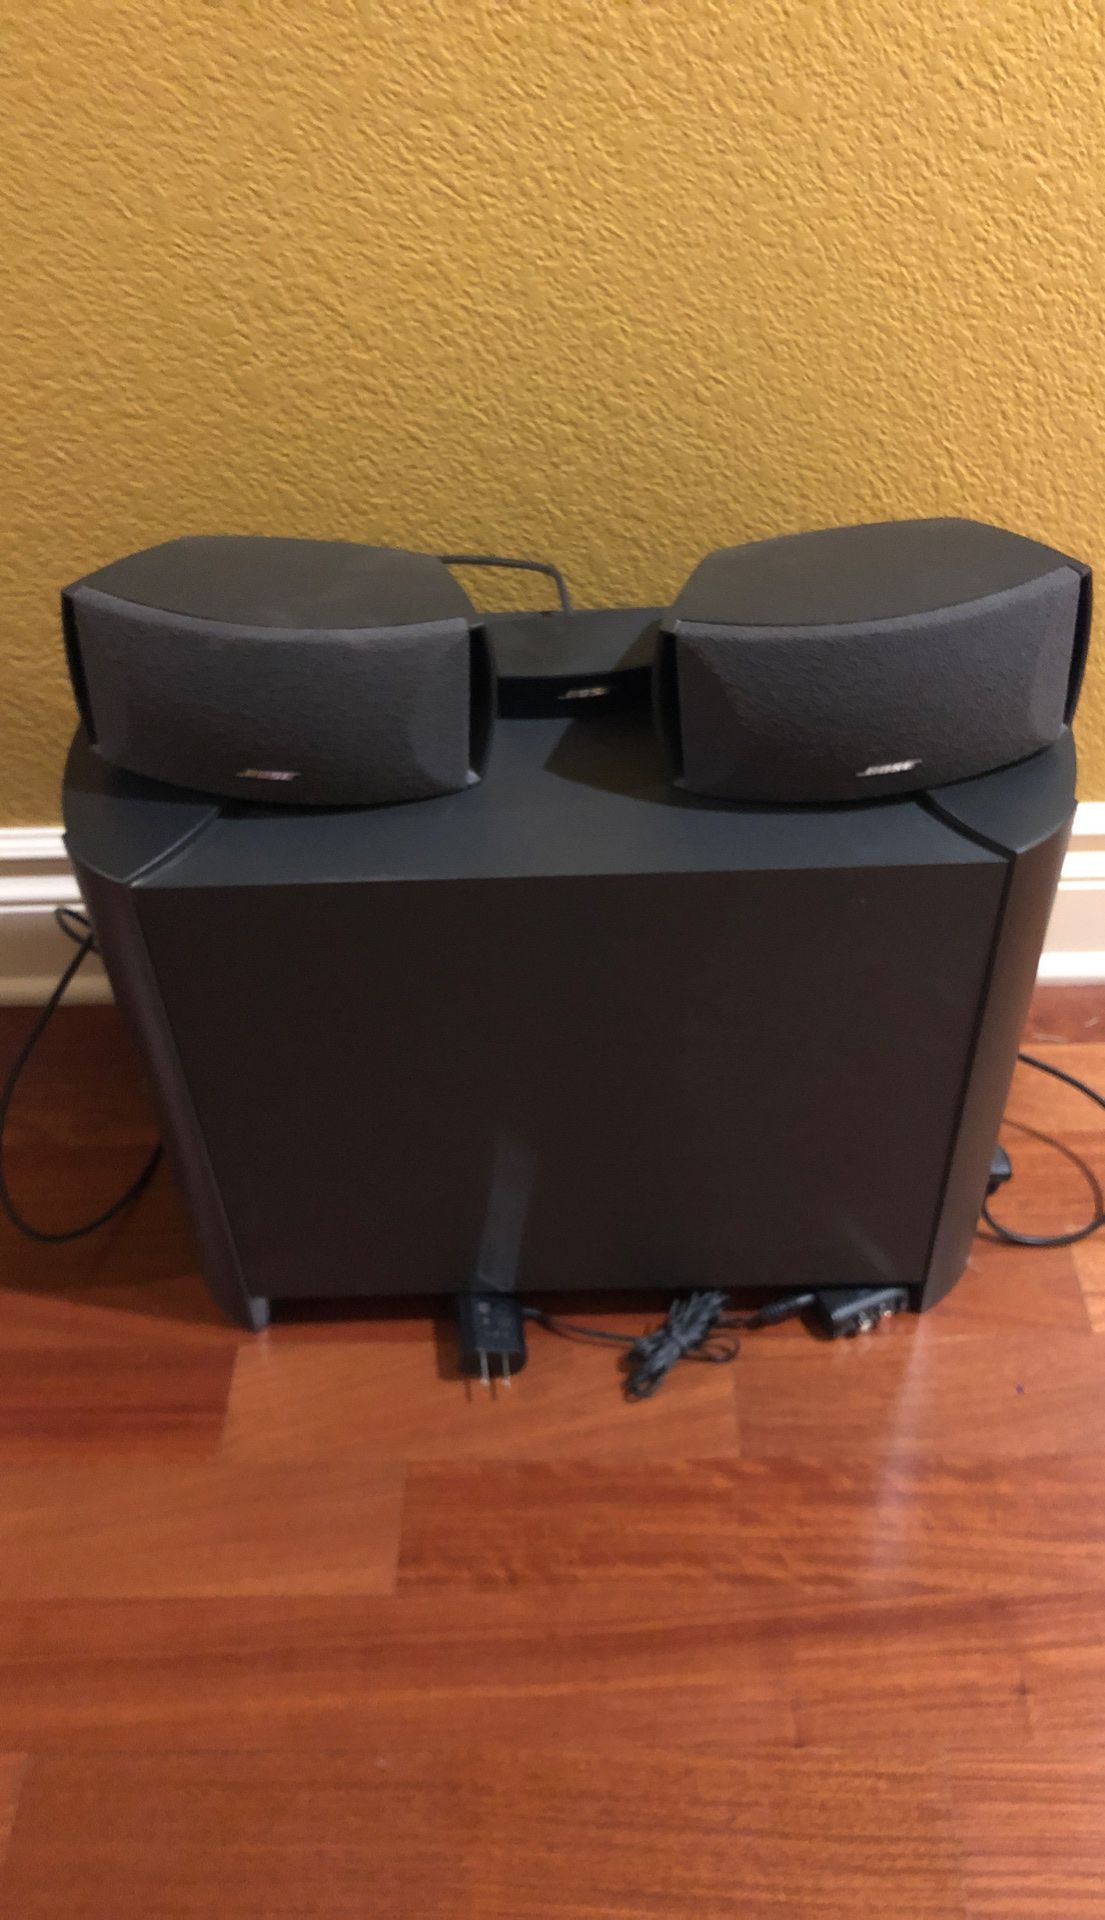 Bose CineMate speaker system